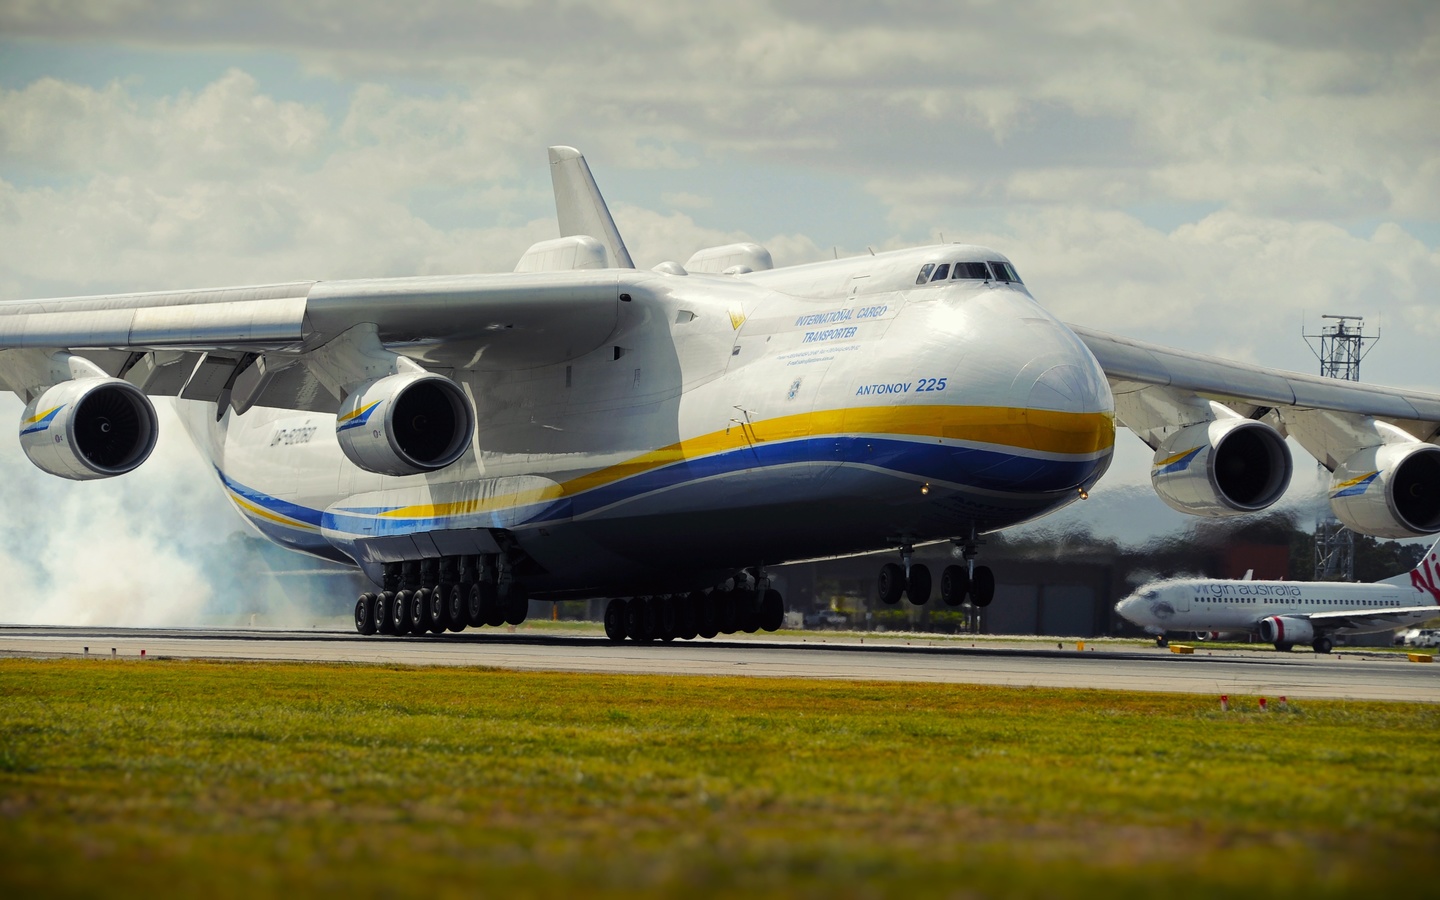 an 225, самолёт, производитель, украина, вес, 590 тонн, грузоподъемность, 254 тонны, скорость 762 км, взлет, ан-225, мрия